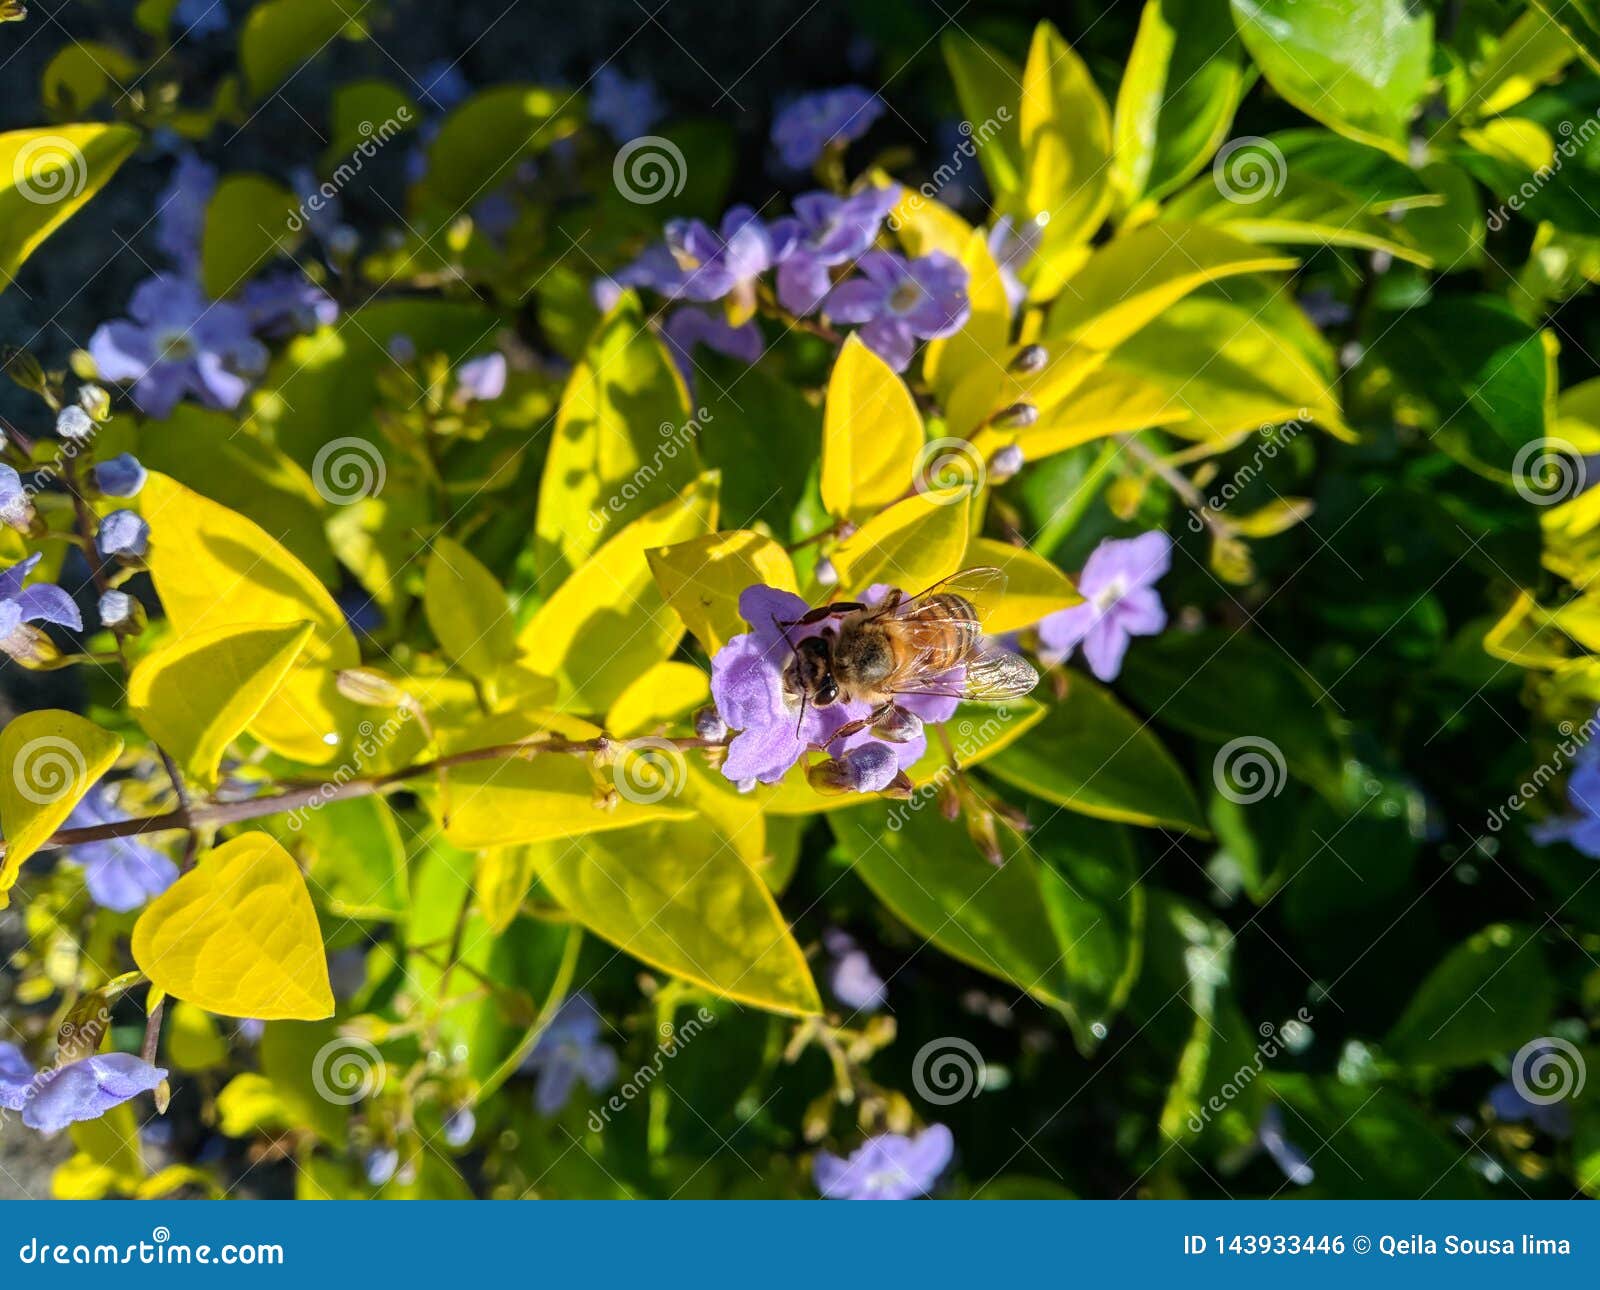 Usines jaunes pleines des fleurs lilas, et une abeille essayant d'obtenir le miel La nature est belle. Plein jaune d'usines jauni a rempli abeille jaunâtre lilas de fleurs que l'essai emportent pour obtenir la nature de miel